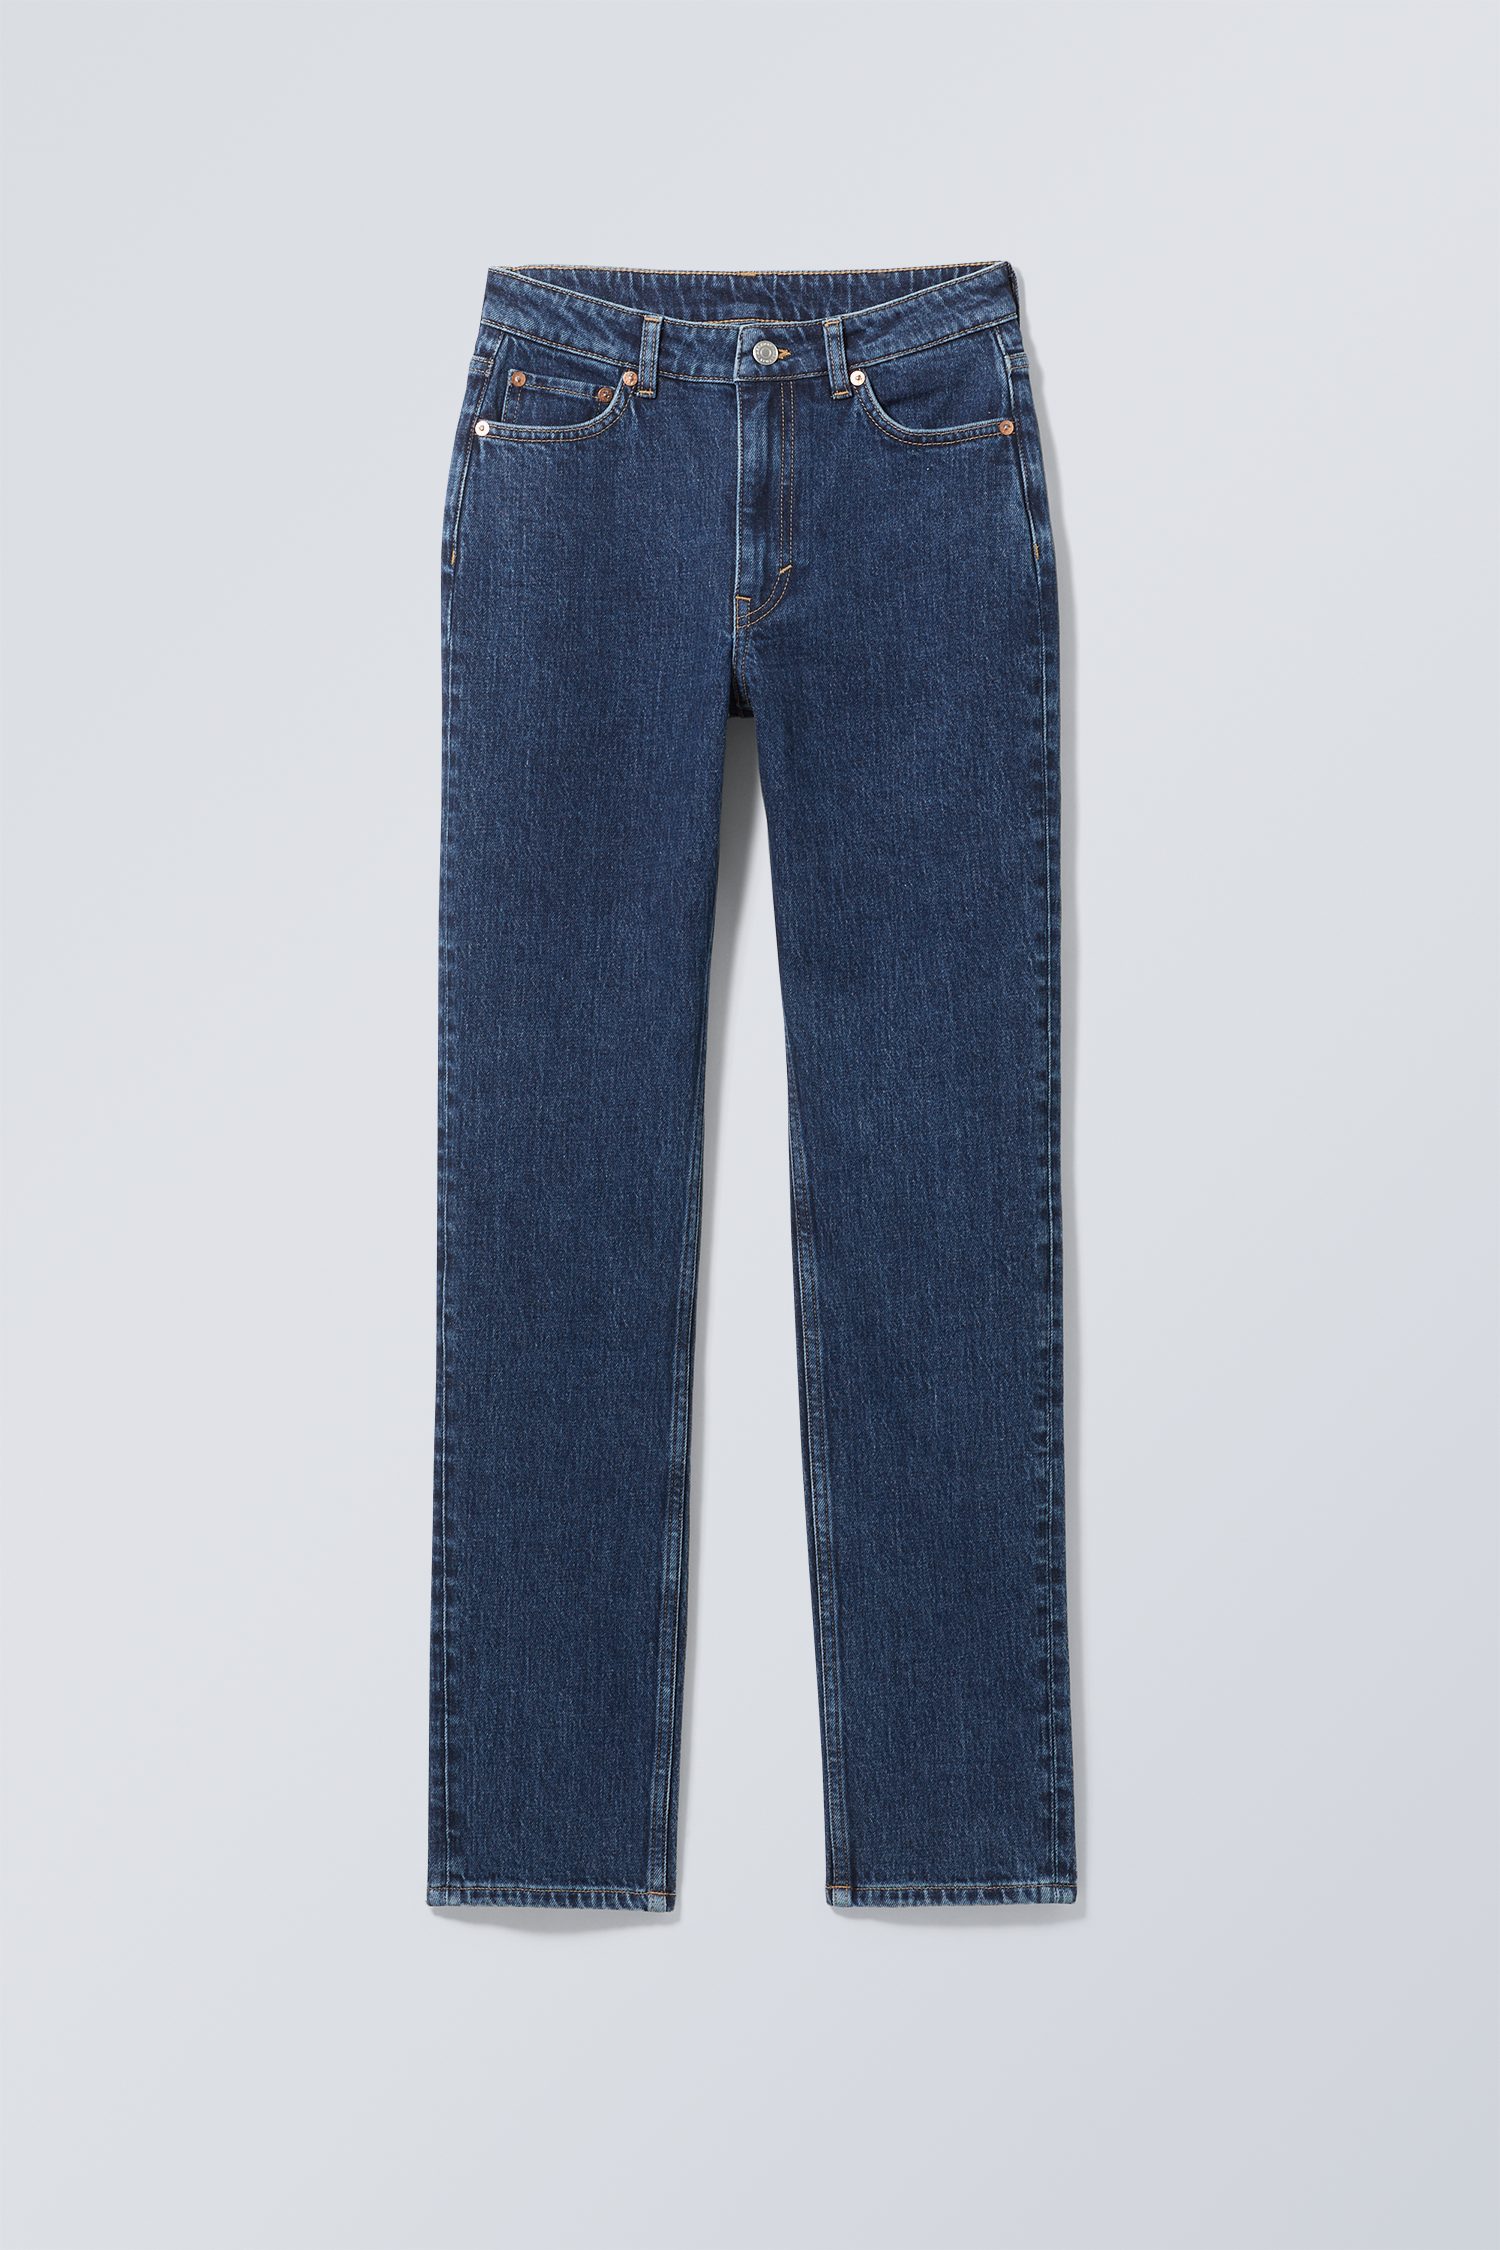 Weekday Jeans Smooth mit schmaler Passform und hohem Bund Edles Blau, Skinny in Größe 24/32. Farbe: Nobel blue von Weekday